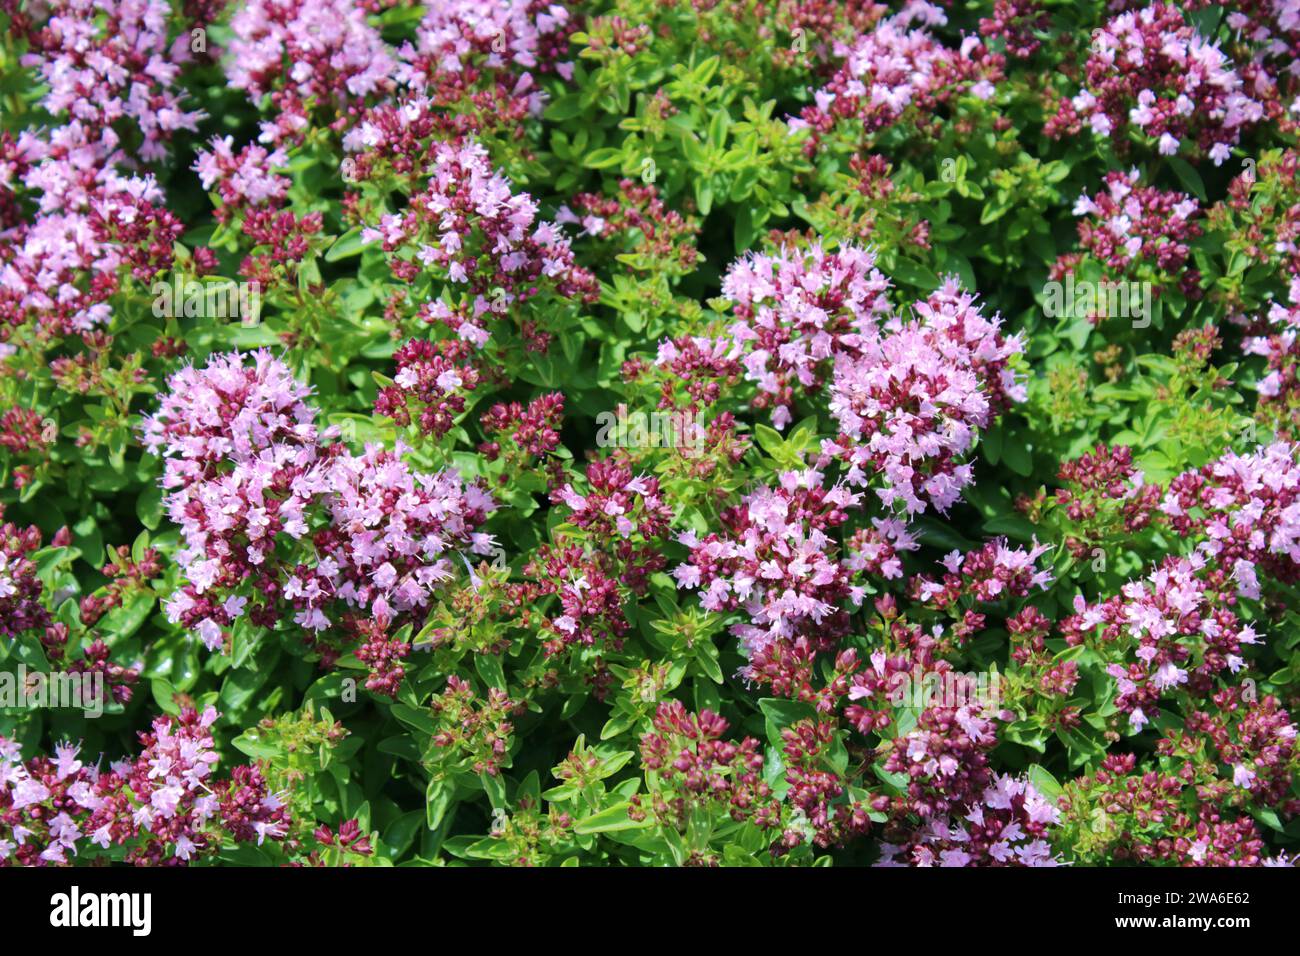 Flowering Compact Oregano (Origanum vulgare 'Compactum') plants. Stock Photo